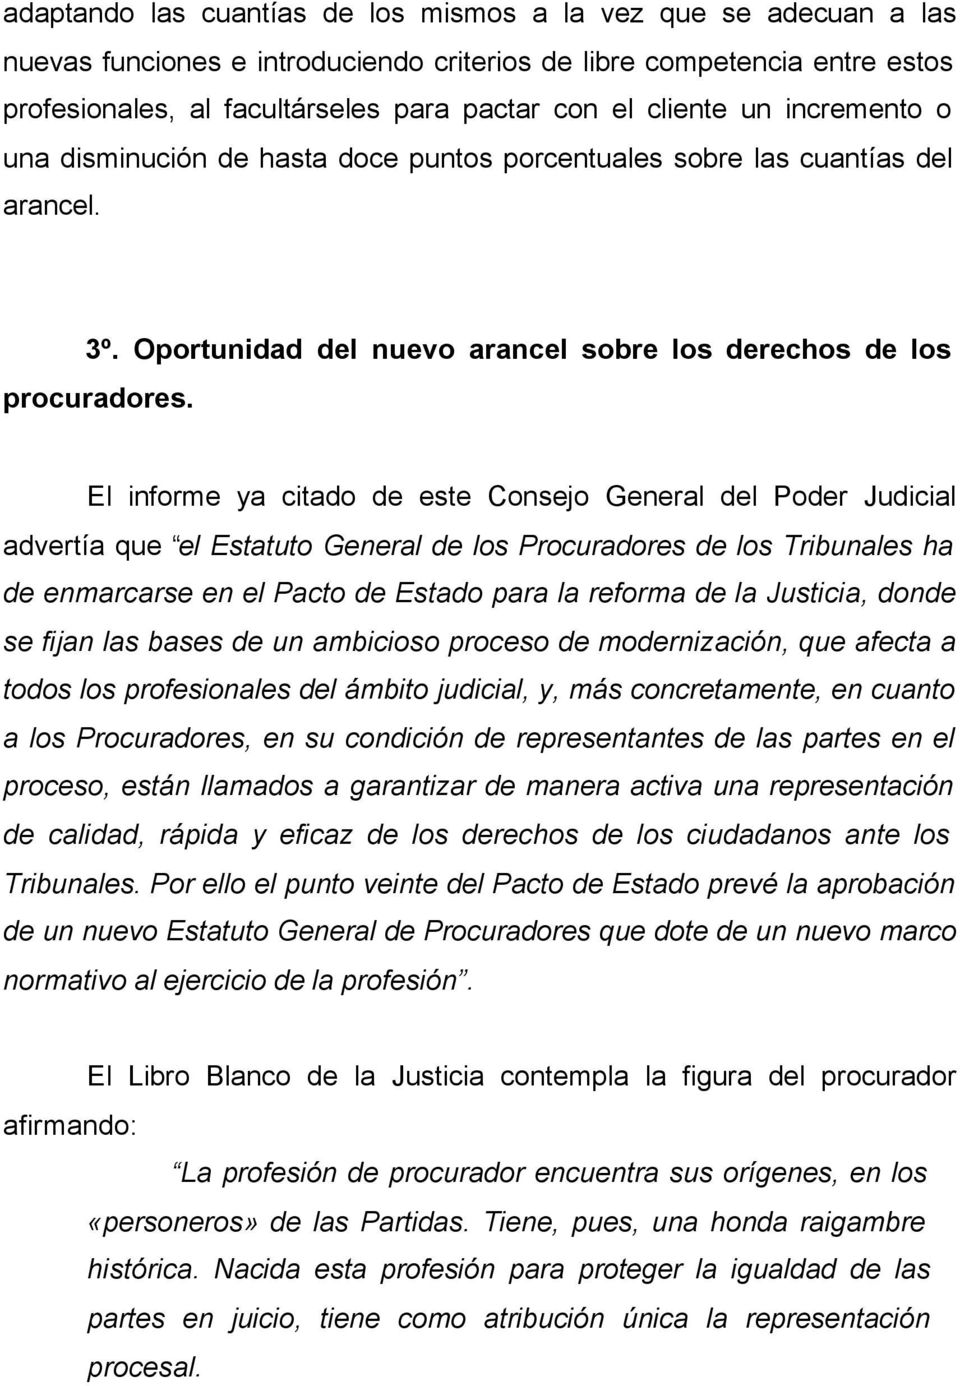 El informe ya citado de este Consejo General del Poder Judicial advertía que el Estatuto General de los Procuradores de los Tribunales ha de enmarcarse en el Pacto de Estado para la reforma de la